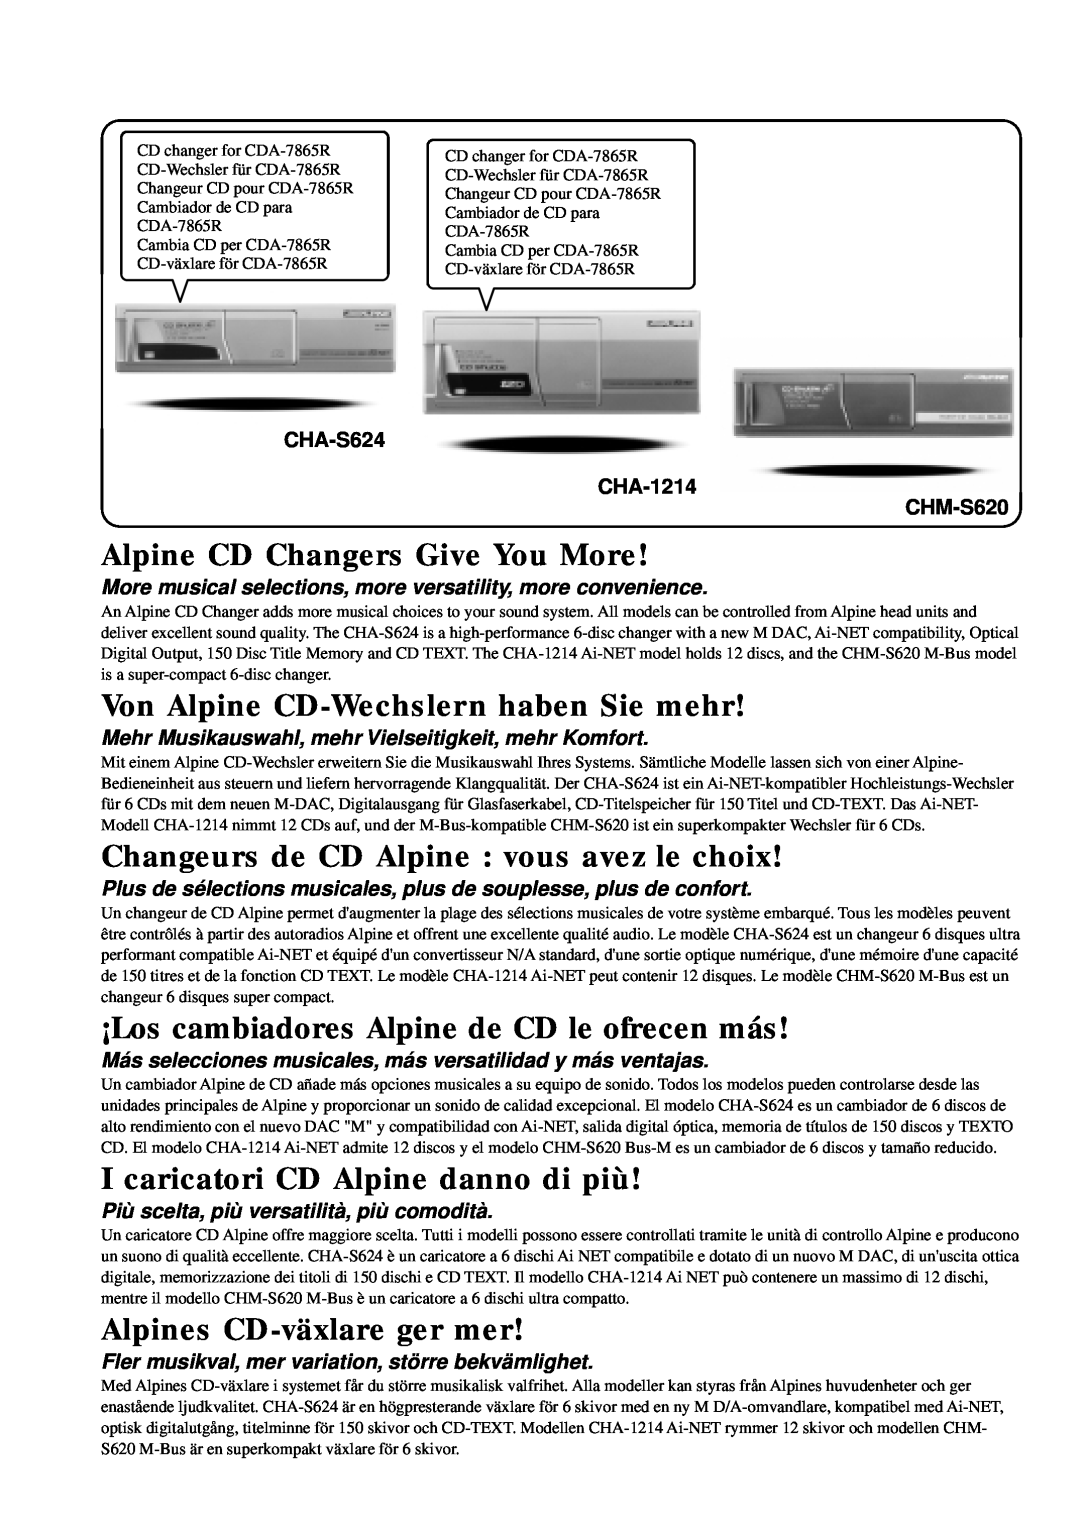 Alpine CDA-7865R Alpine CD Changers Give You More, Von Alpine CD-Wechslernhaben Sie mehr, Alpines CD-växlareger mer 